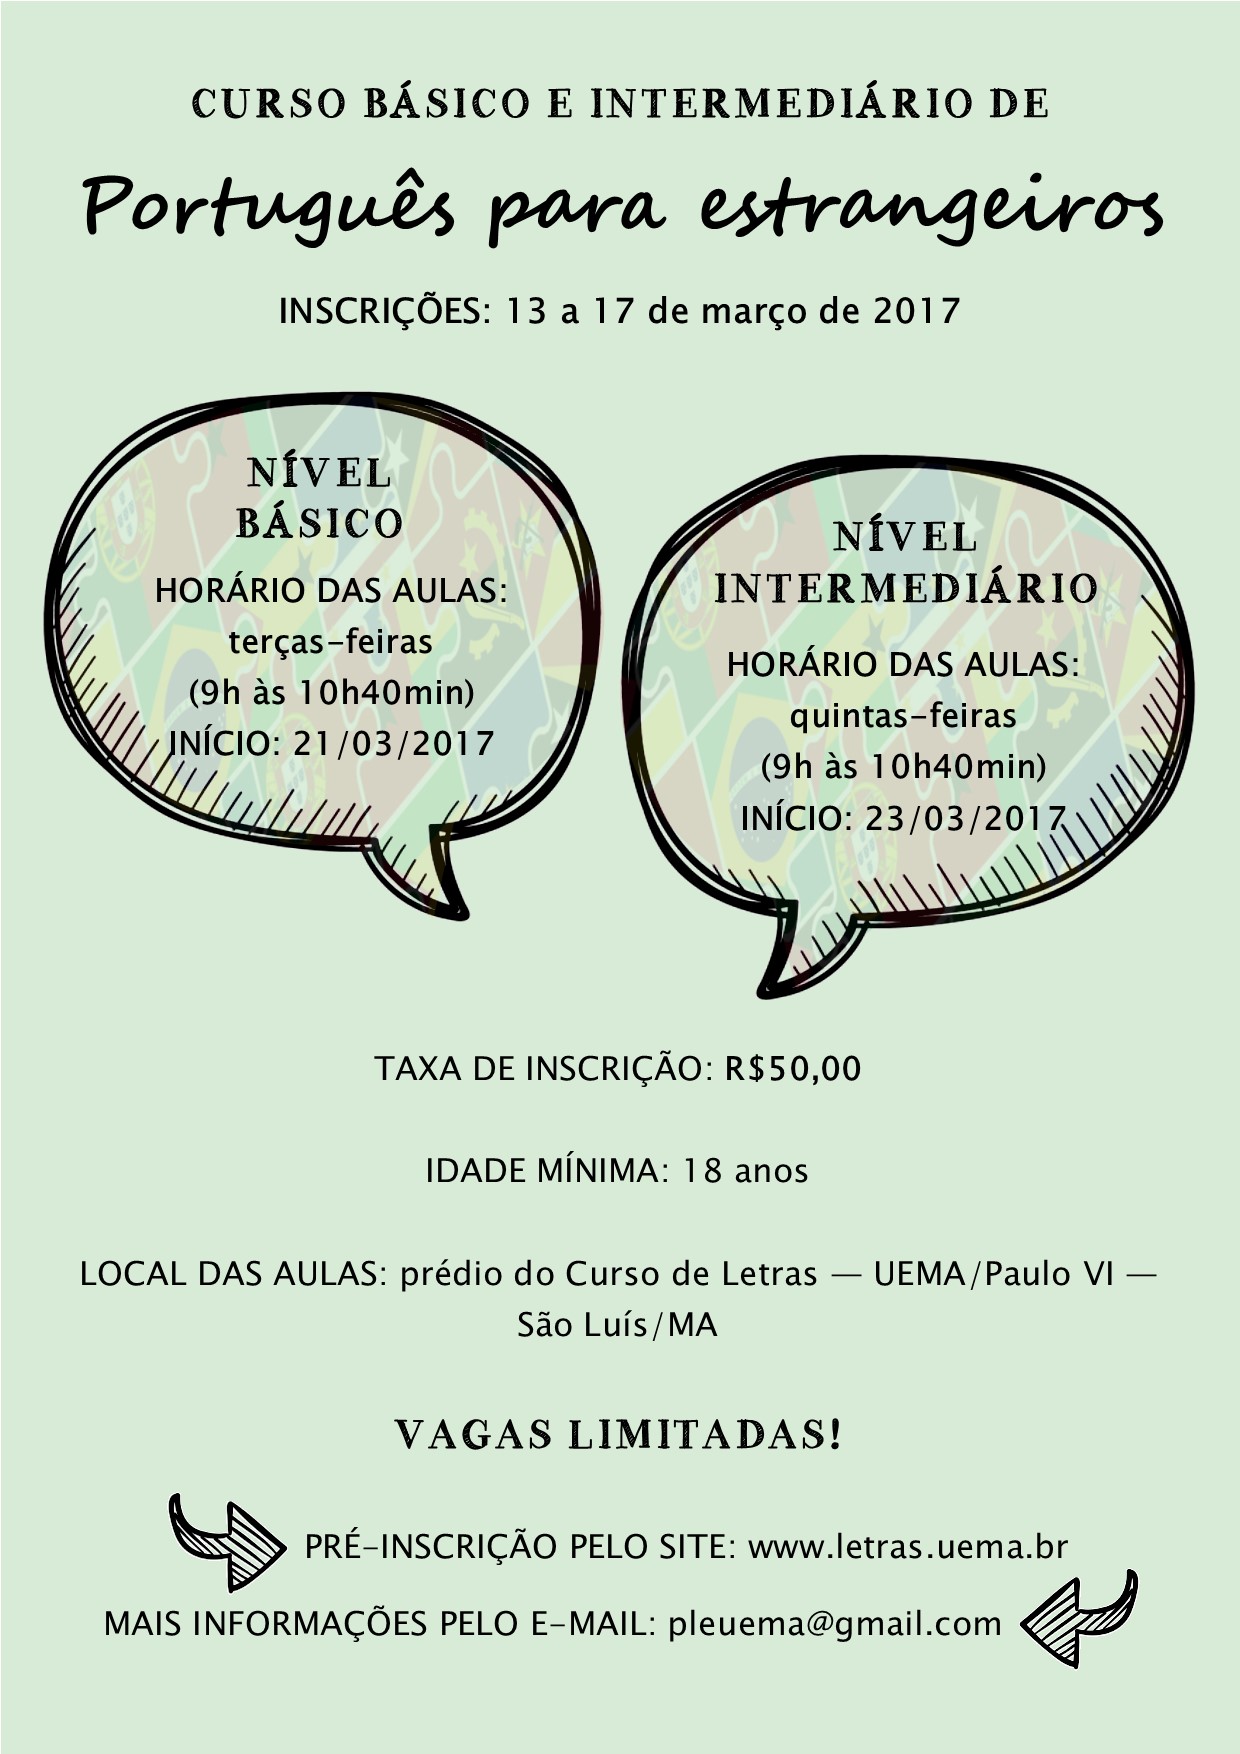 AULA 2 - Curso de Português para Estrangeiros - DAINT/UERN 